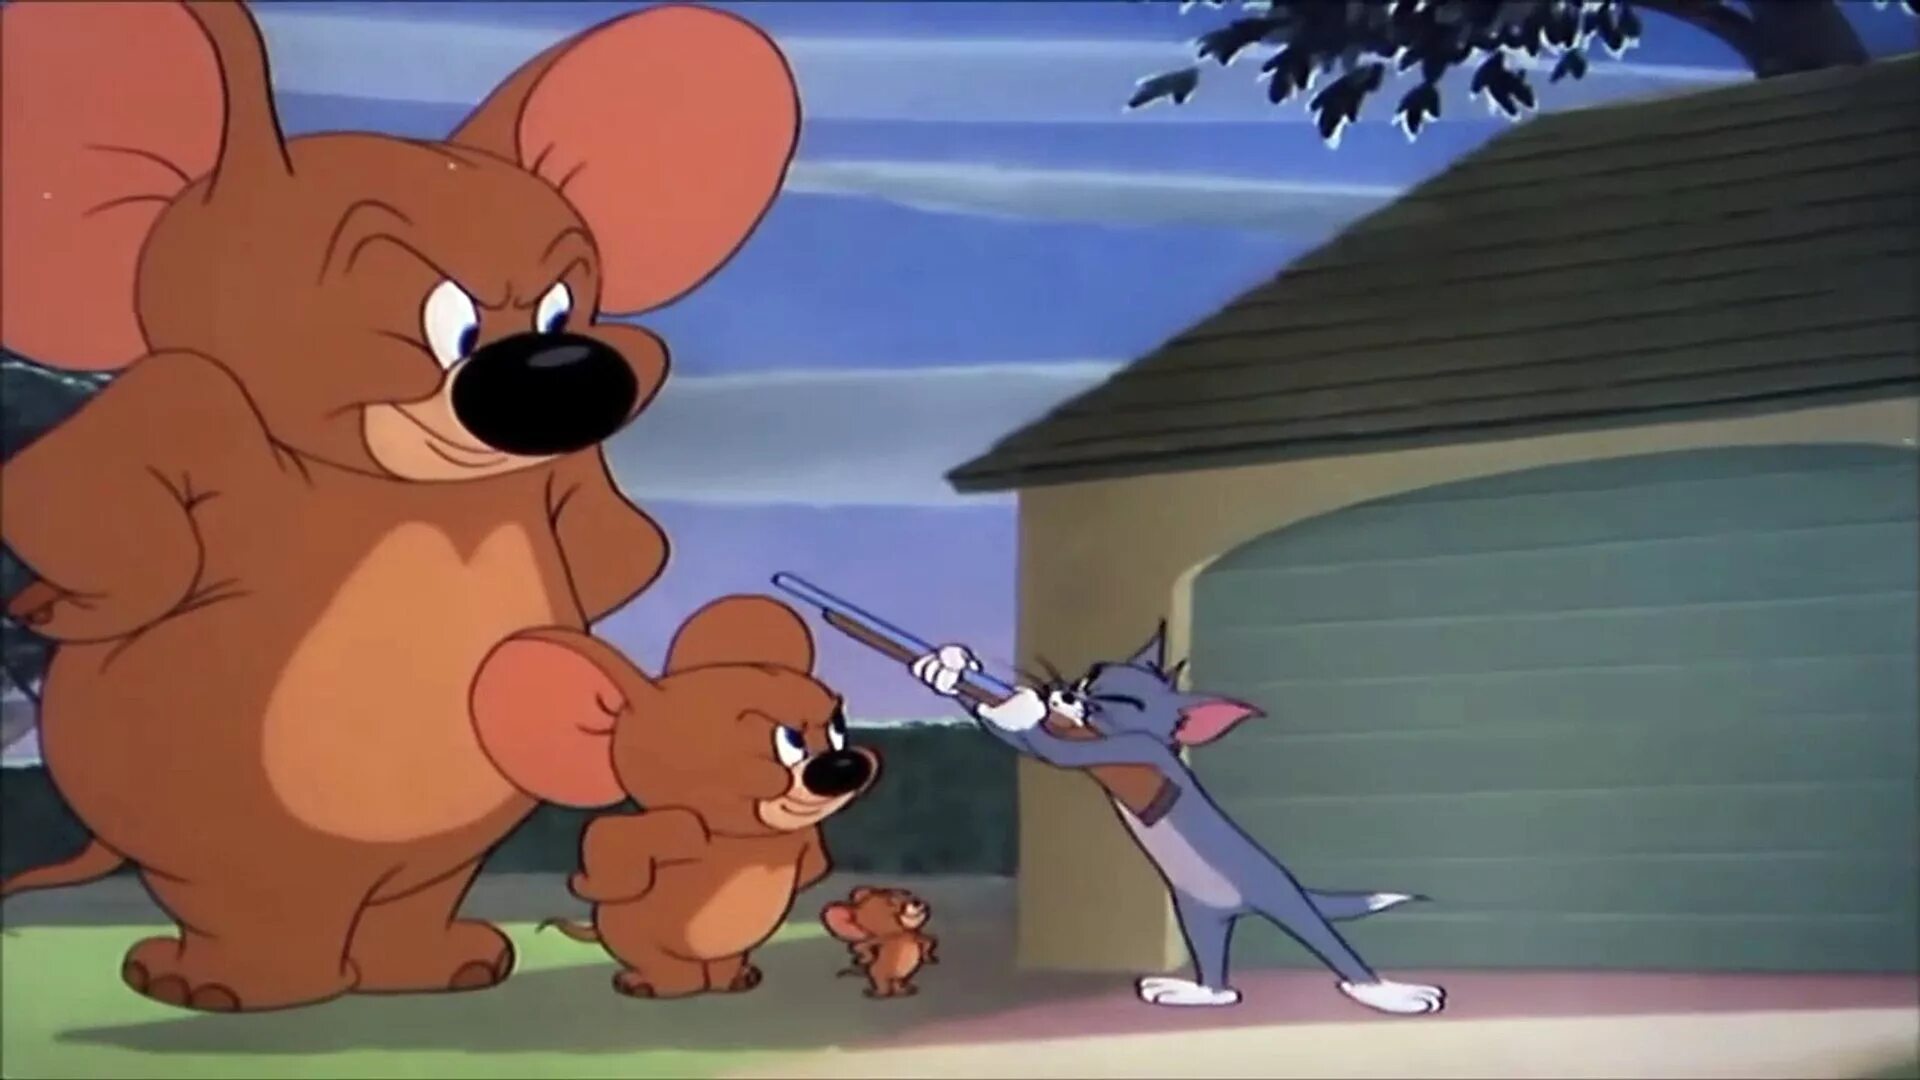 Сели том. Джерри и Слоненок мультфильм 1953. Большой Джерри из Тома. Том и Джерри Слоненок. Большой мышонок Джерри.